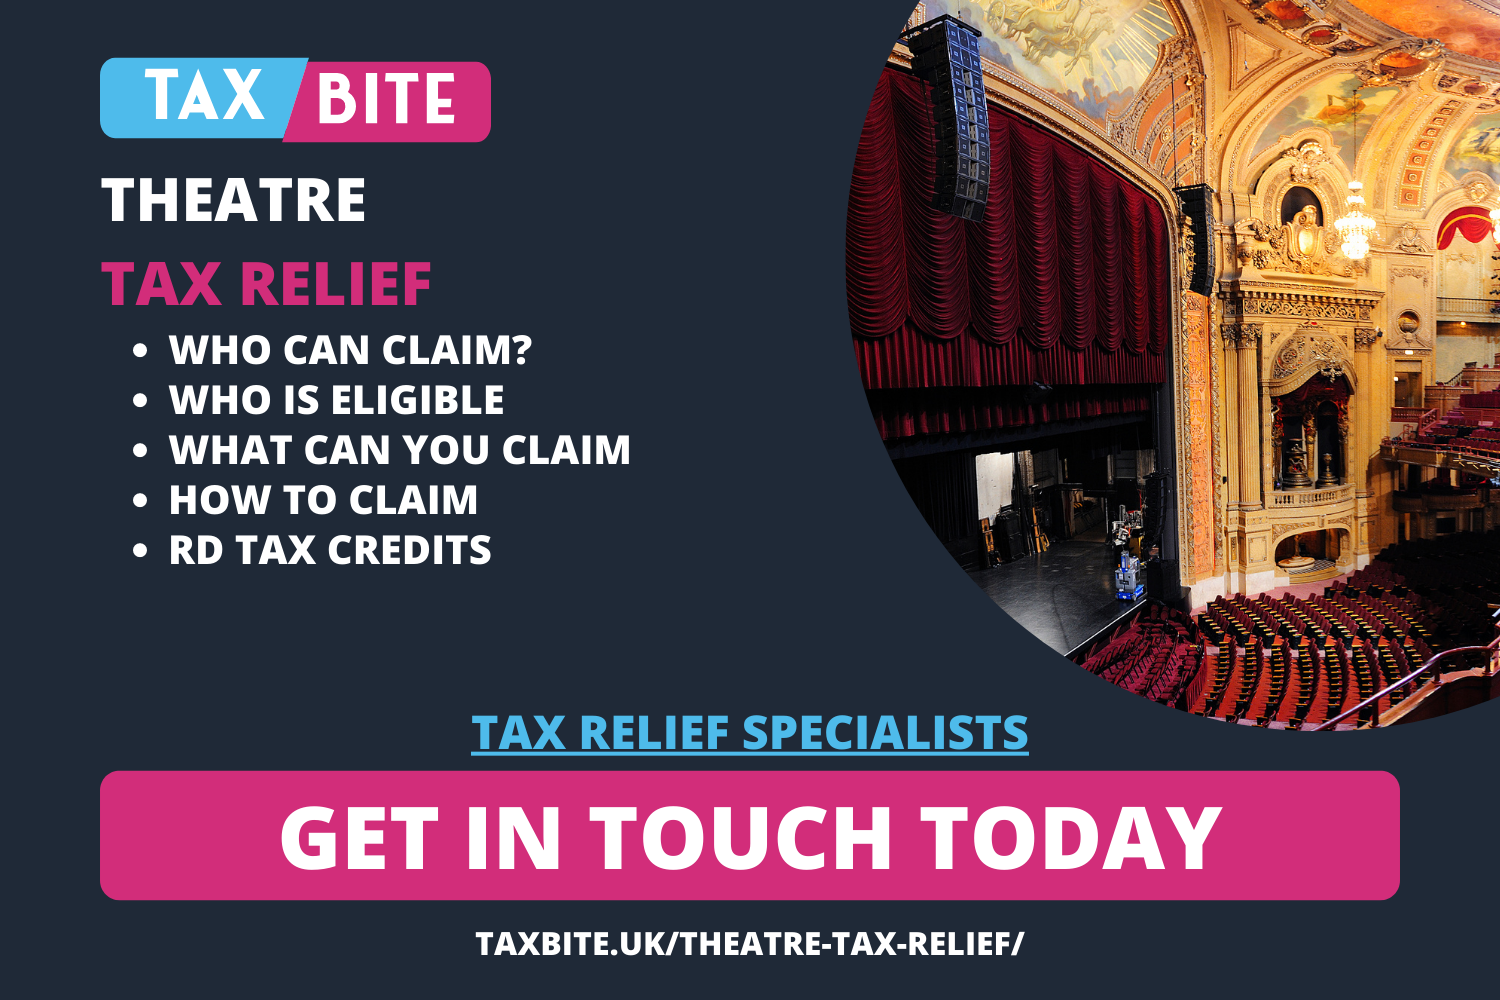 Theatre Tax Relief